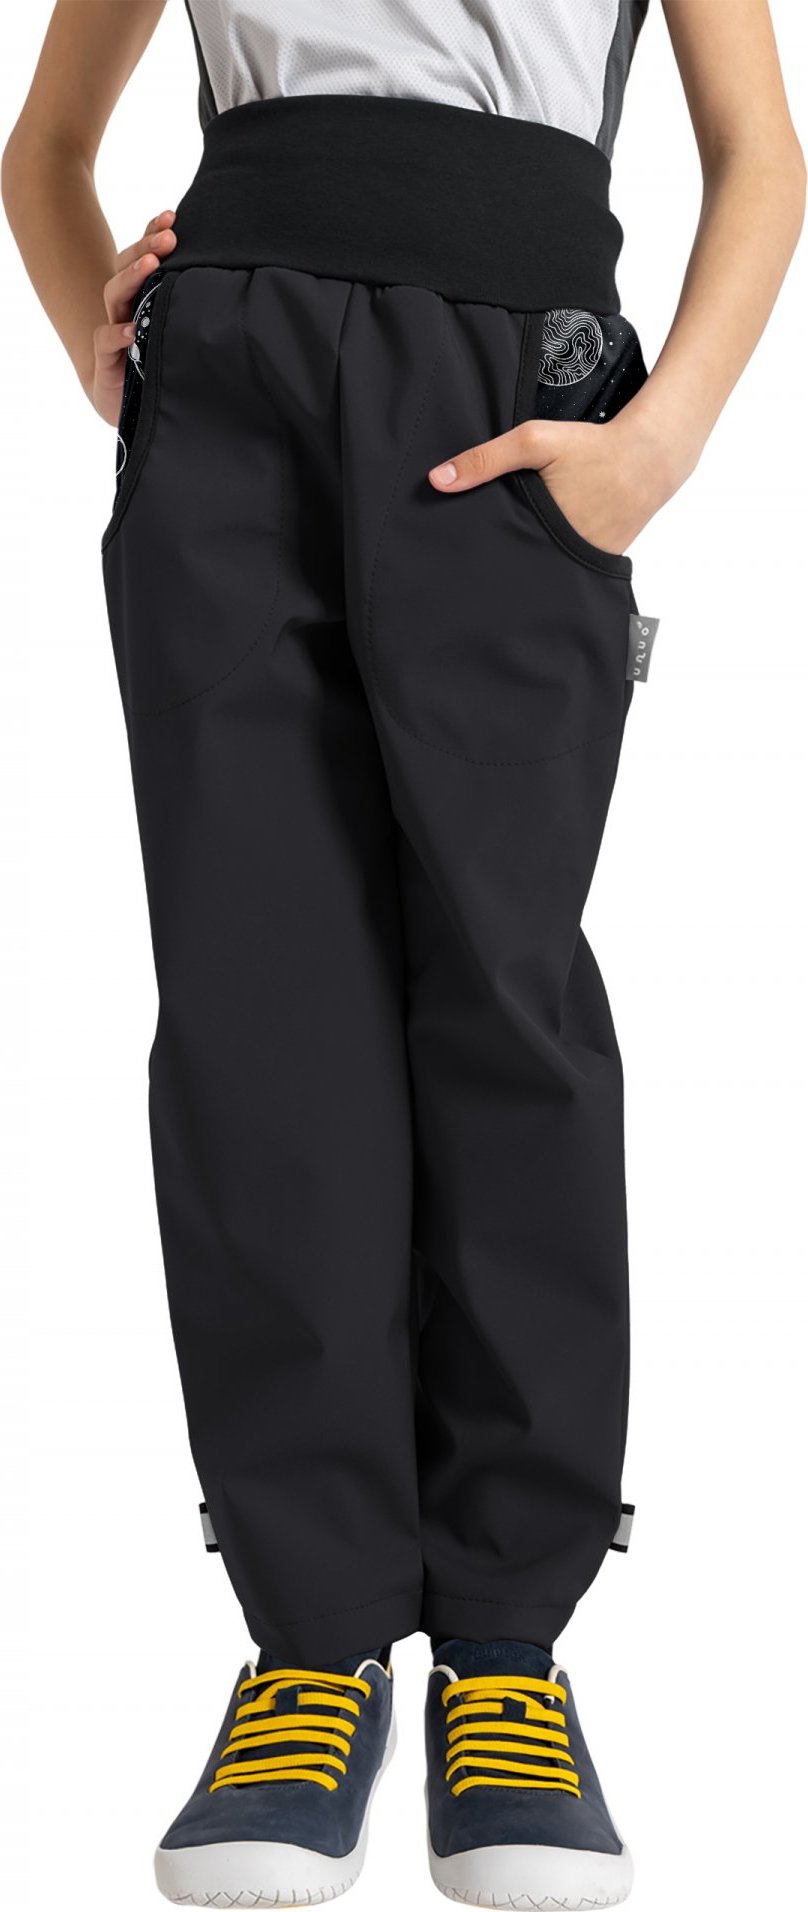 Dětské softshellové kalhoty UNUO Basic s fleecem, černé, Planety Velikost: 98/104